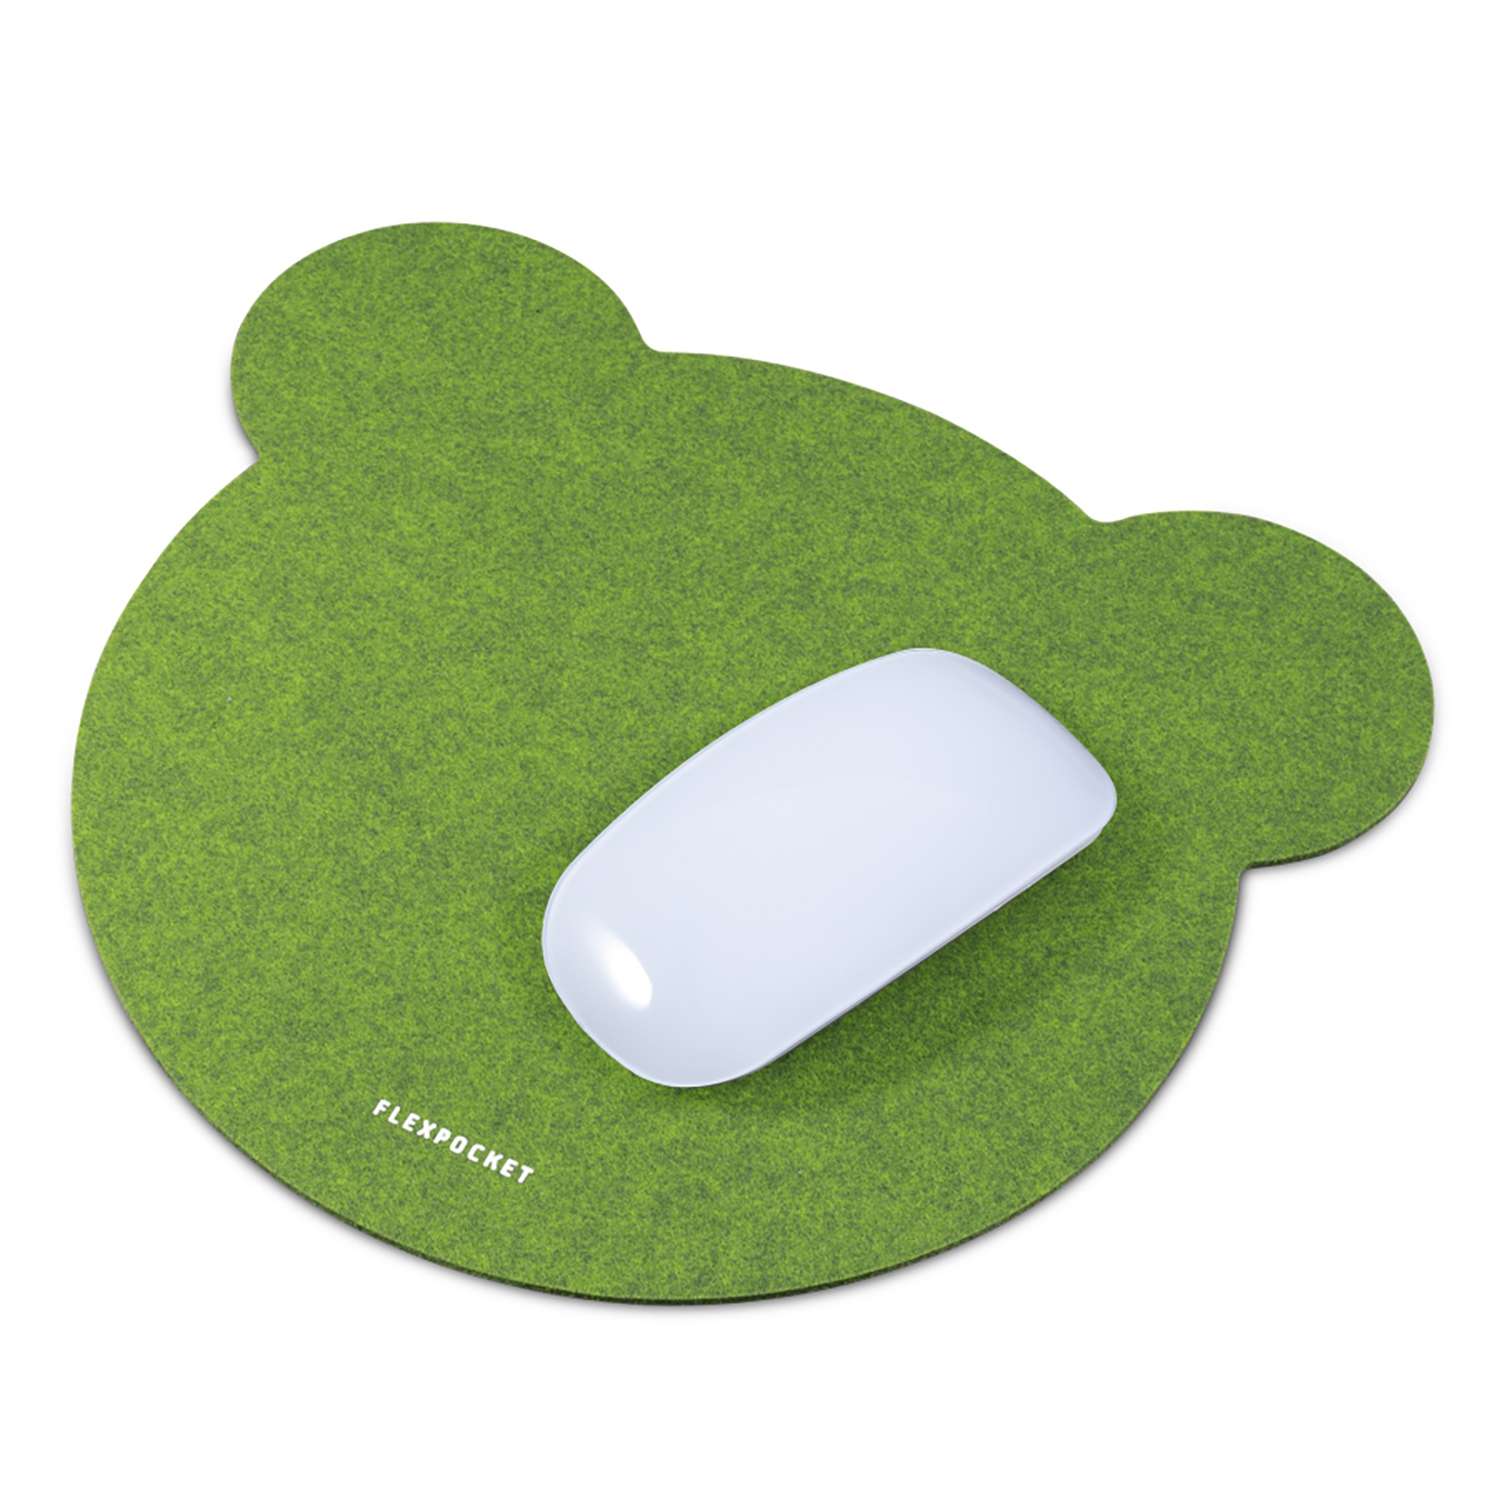 Настольный коврик Flexpocket для мыши 250х250мм зеленый - фото 2